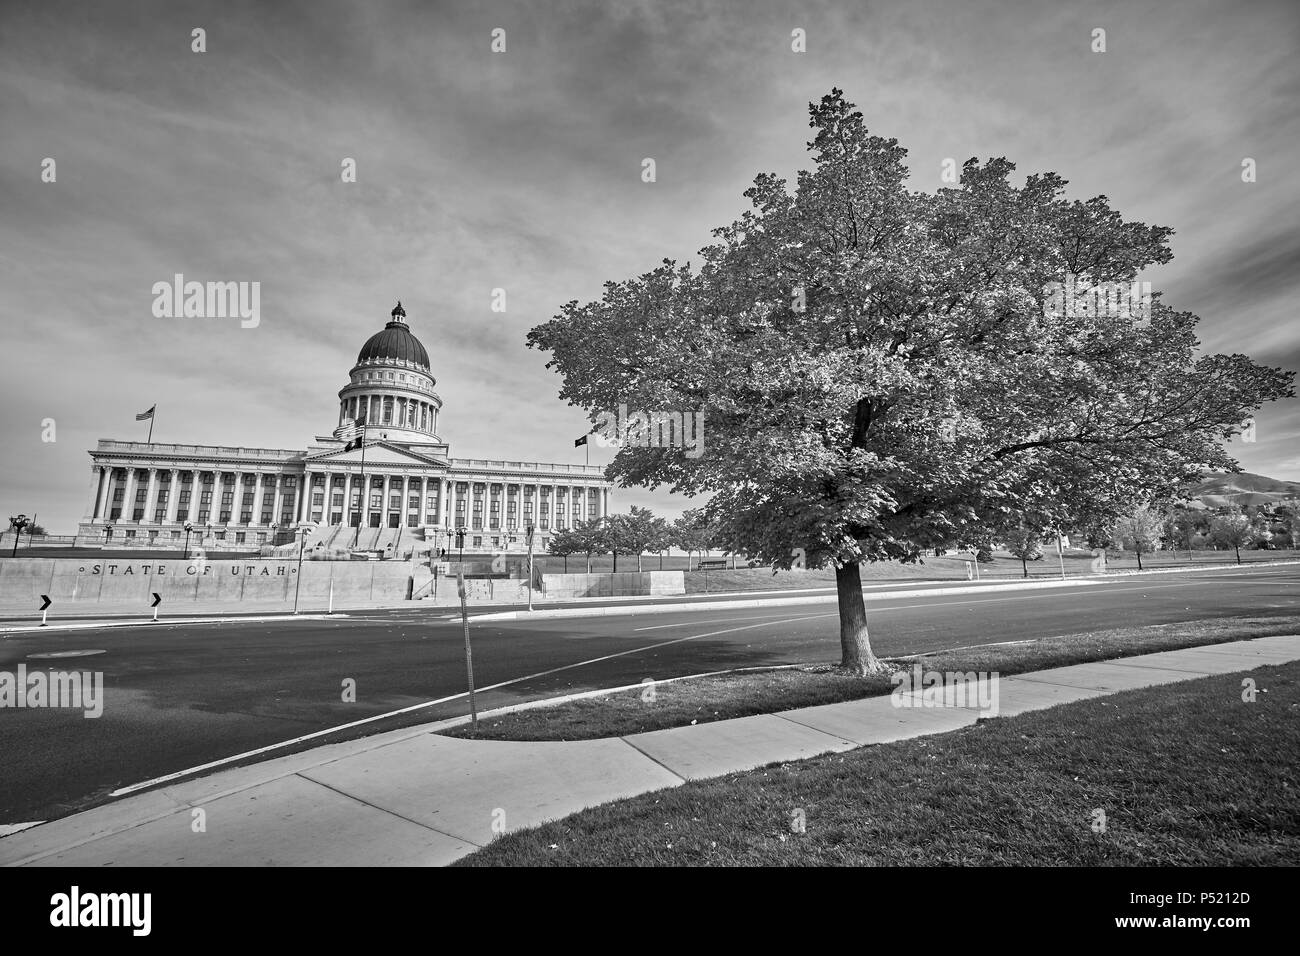 Schwarz-weiß Bild von der Utah State Capitol Building in Salt Lake City, USA. Stockfoto